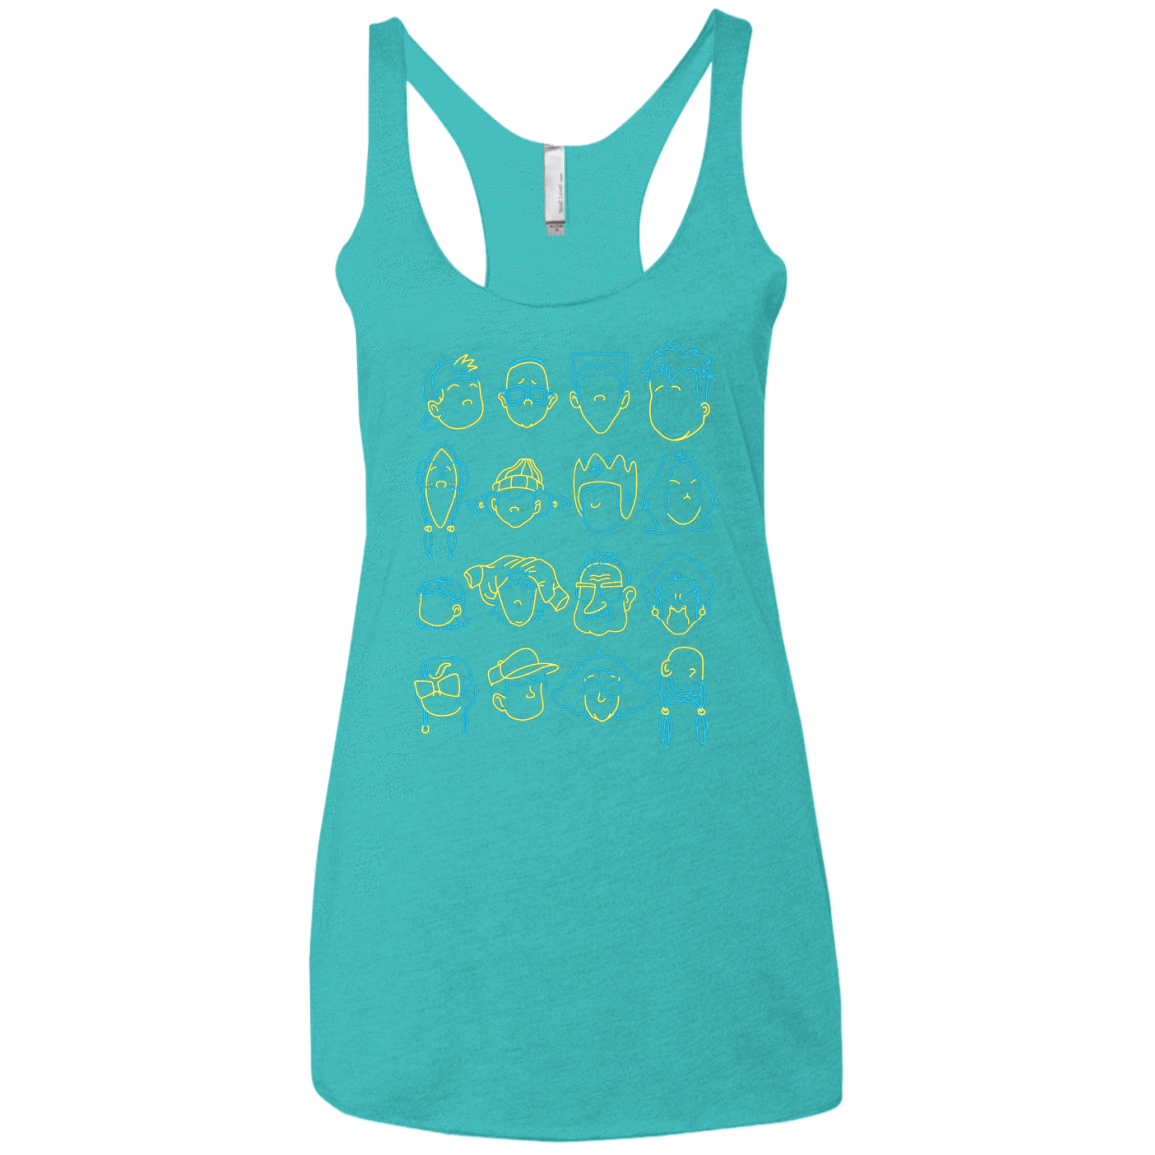 T-Shirts Tahiti Blue / X-Small RECESS Women's Triblend Racerback Tank